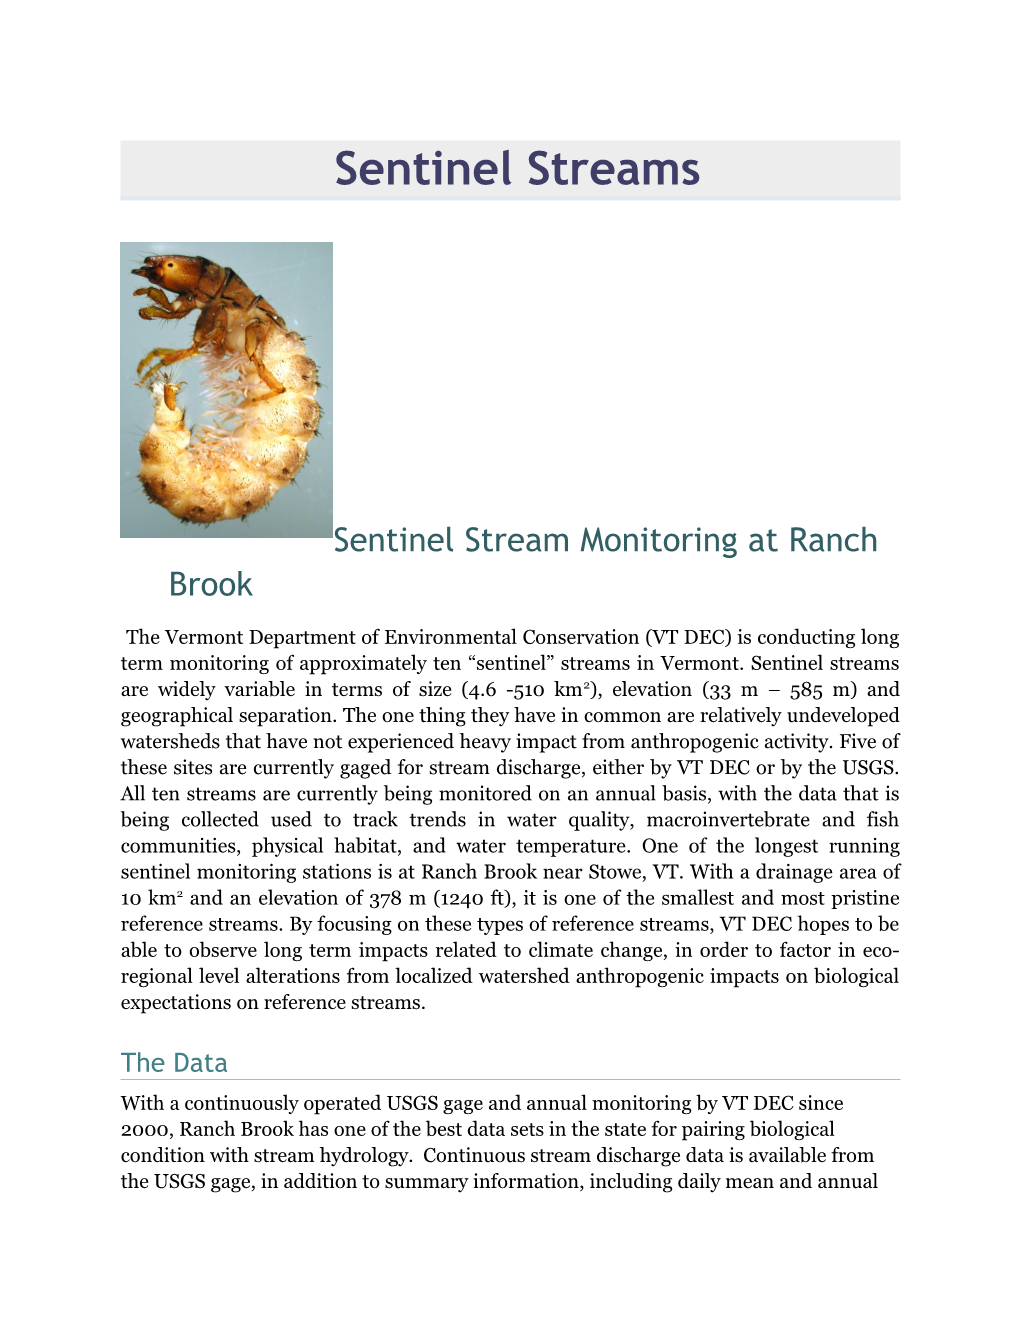 Sentinel Stream Monitoring at Ranch Brook